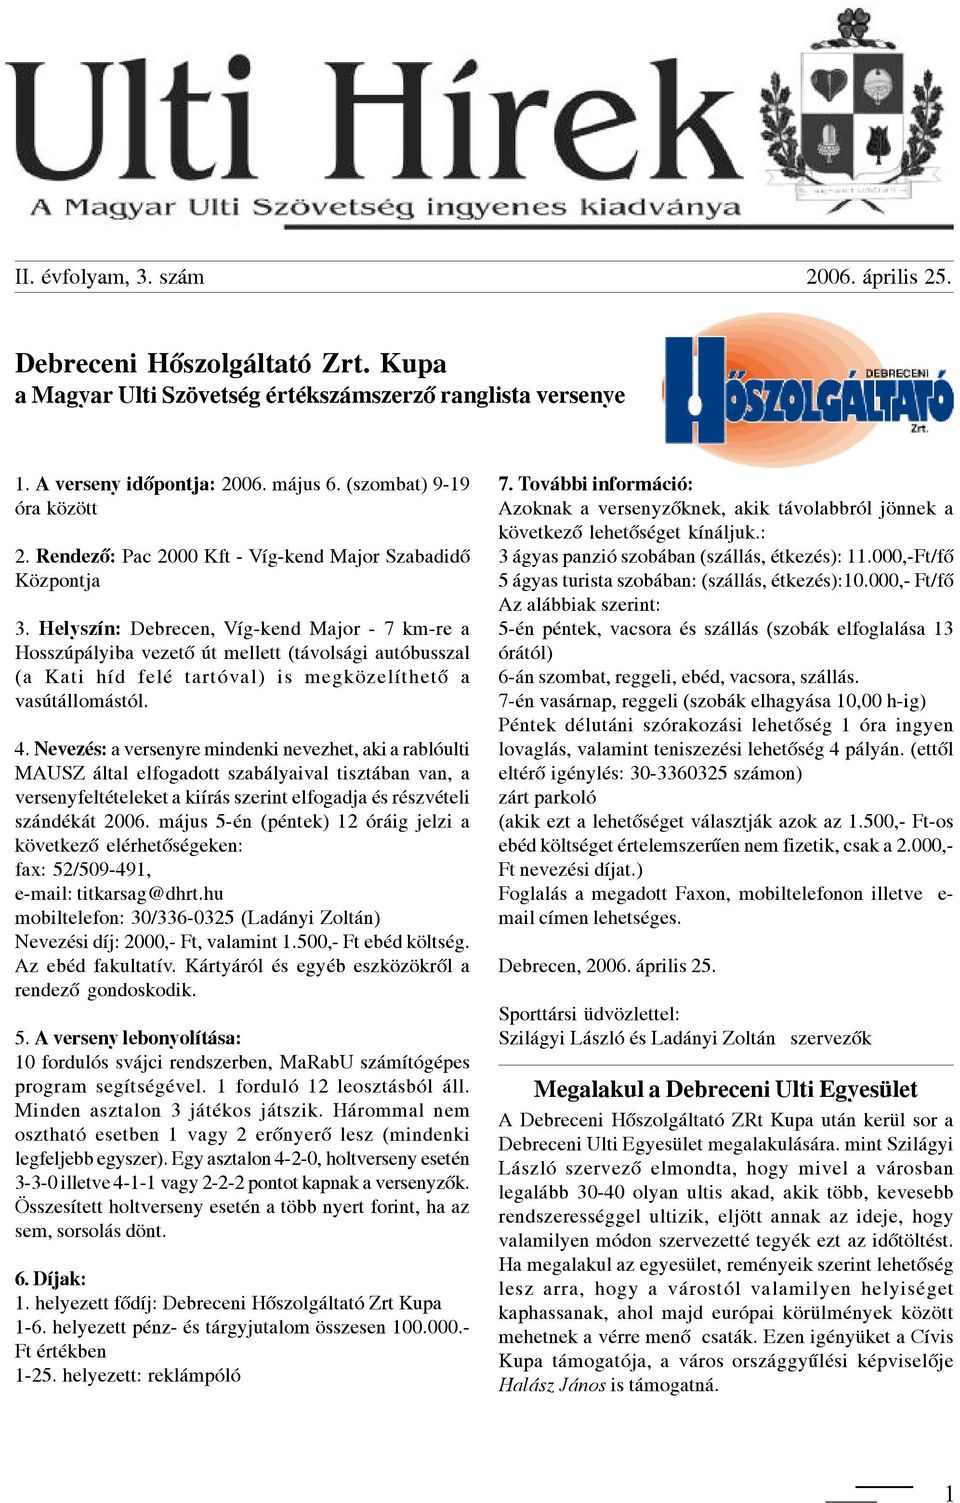 Helyszín: Debrecen, Víg-kend Major - 7 km-re a Hosszúpályiba vezetõ út mellett (távolsági autóbusszal (a Kati híd felé tartóval) is megközelíthetõ a vasútállomástól. 4.